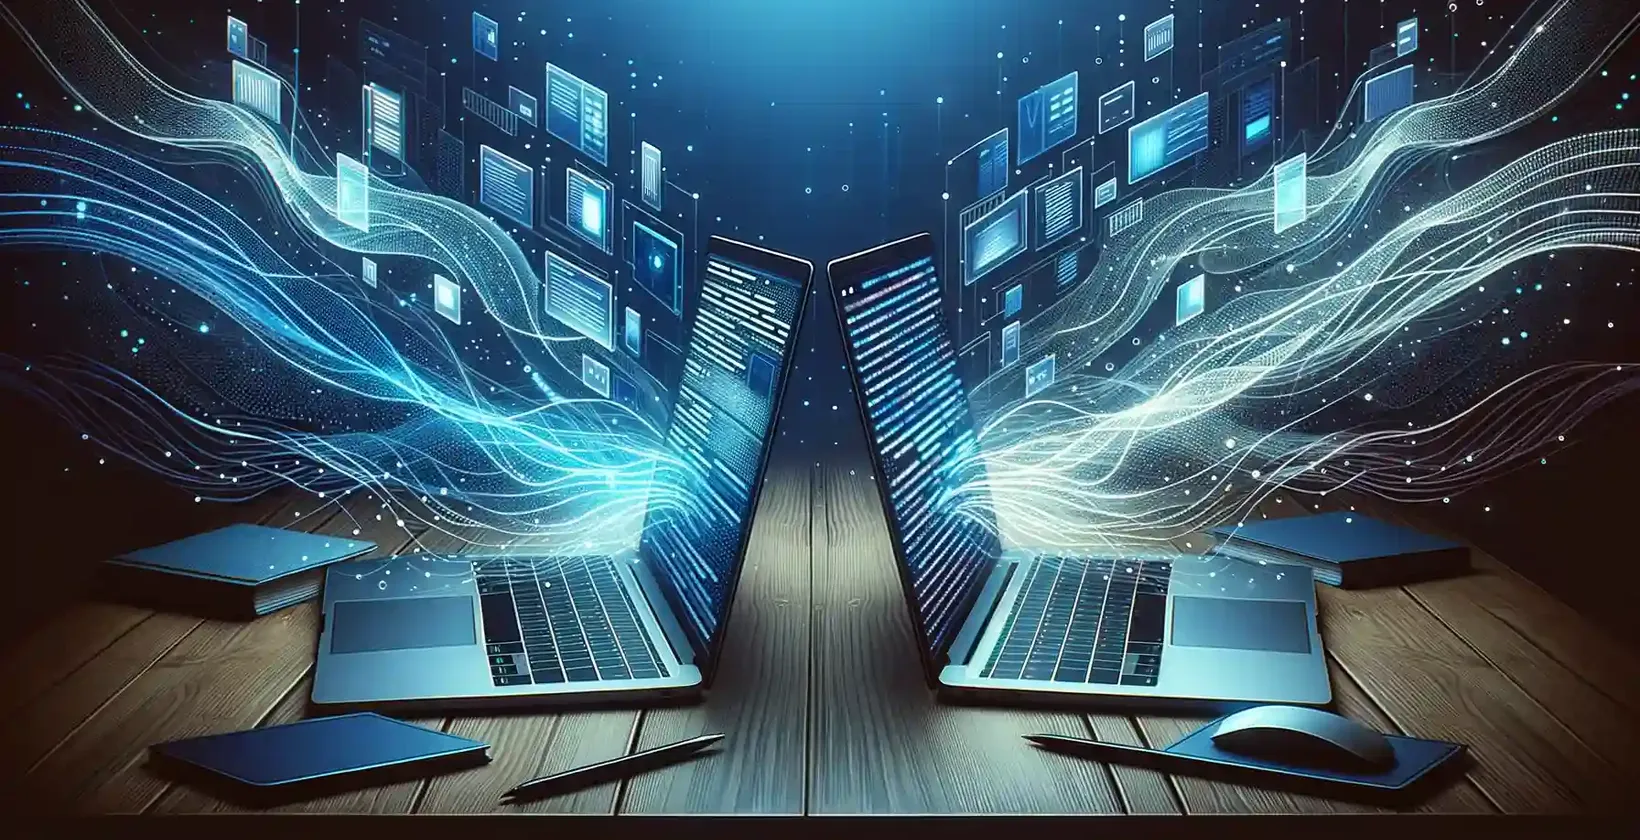 Du nešiojamieji kompiuteriai su skaitmeniniu fonu yra sujungti vienas su kitu